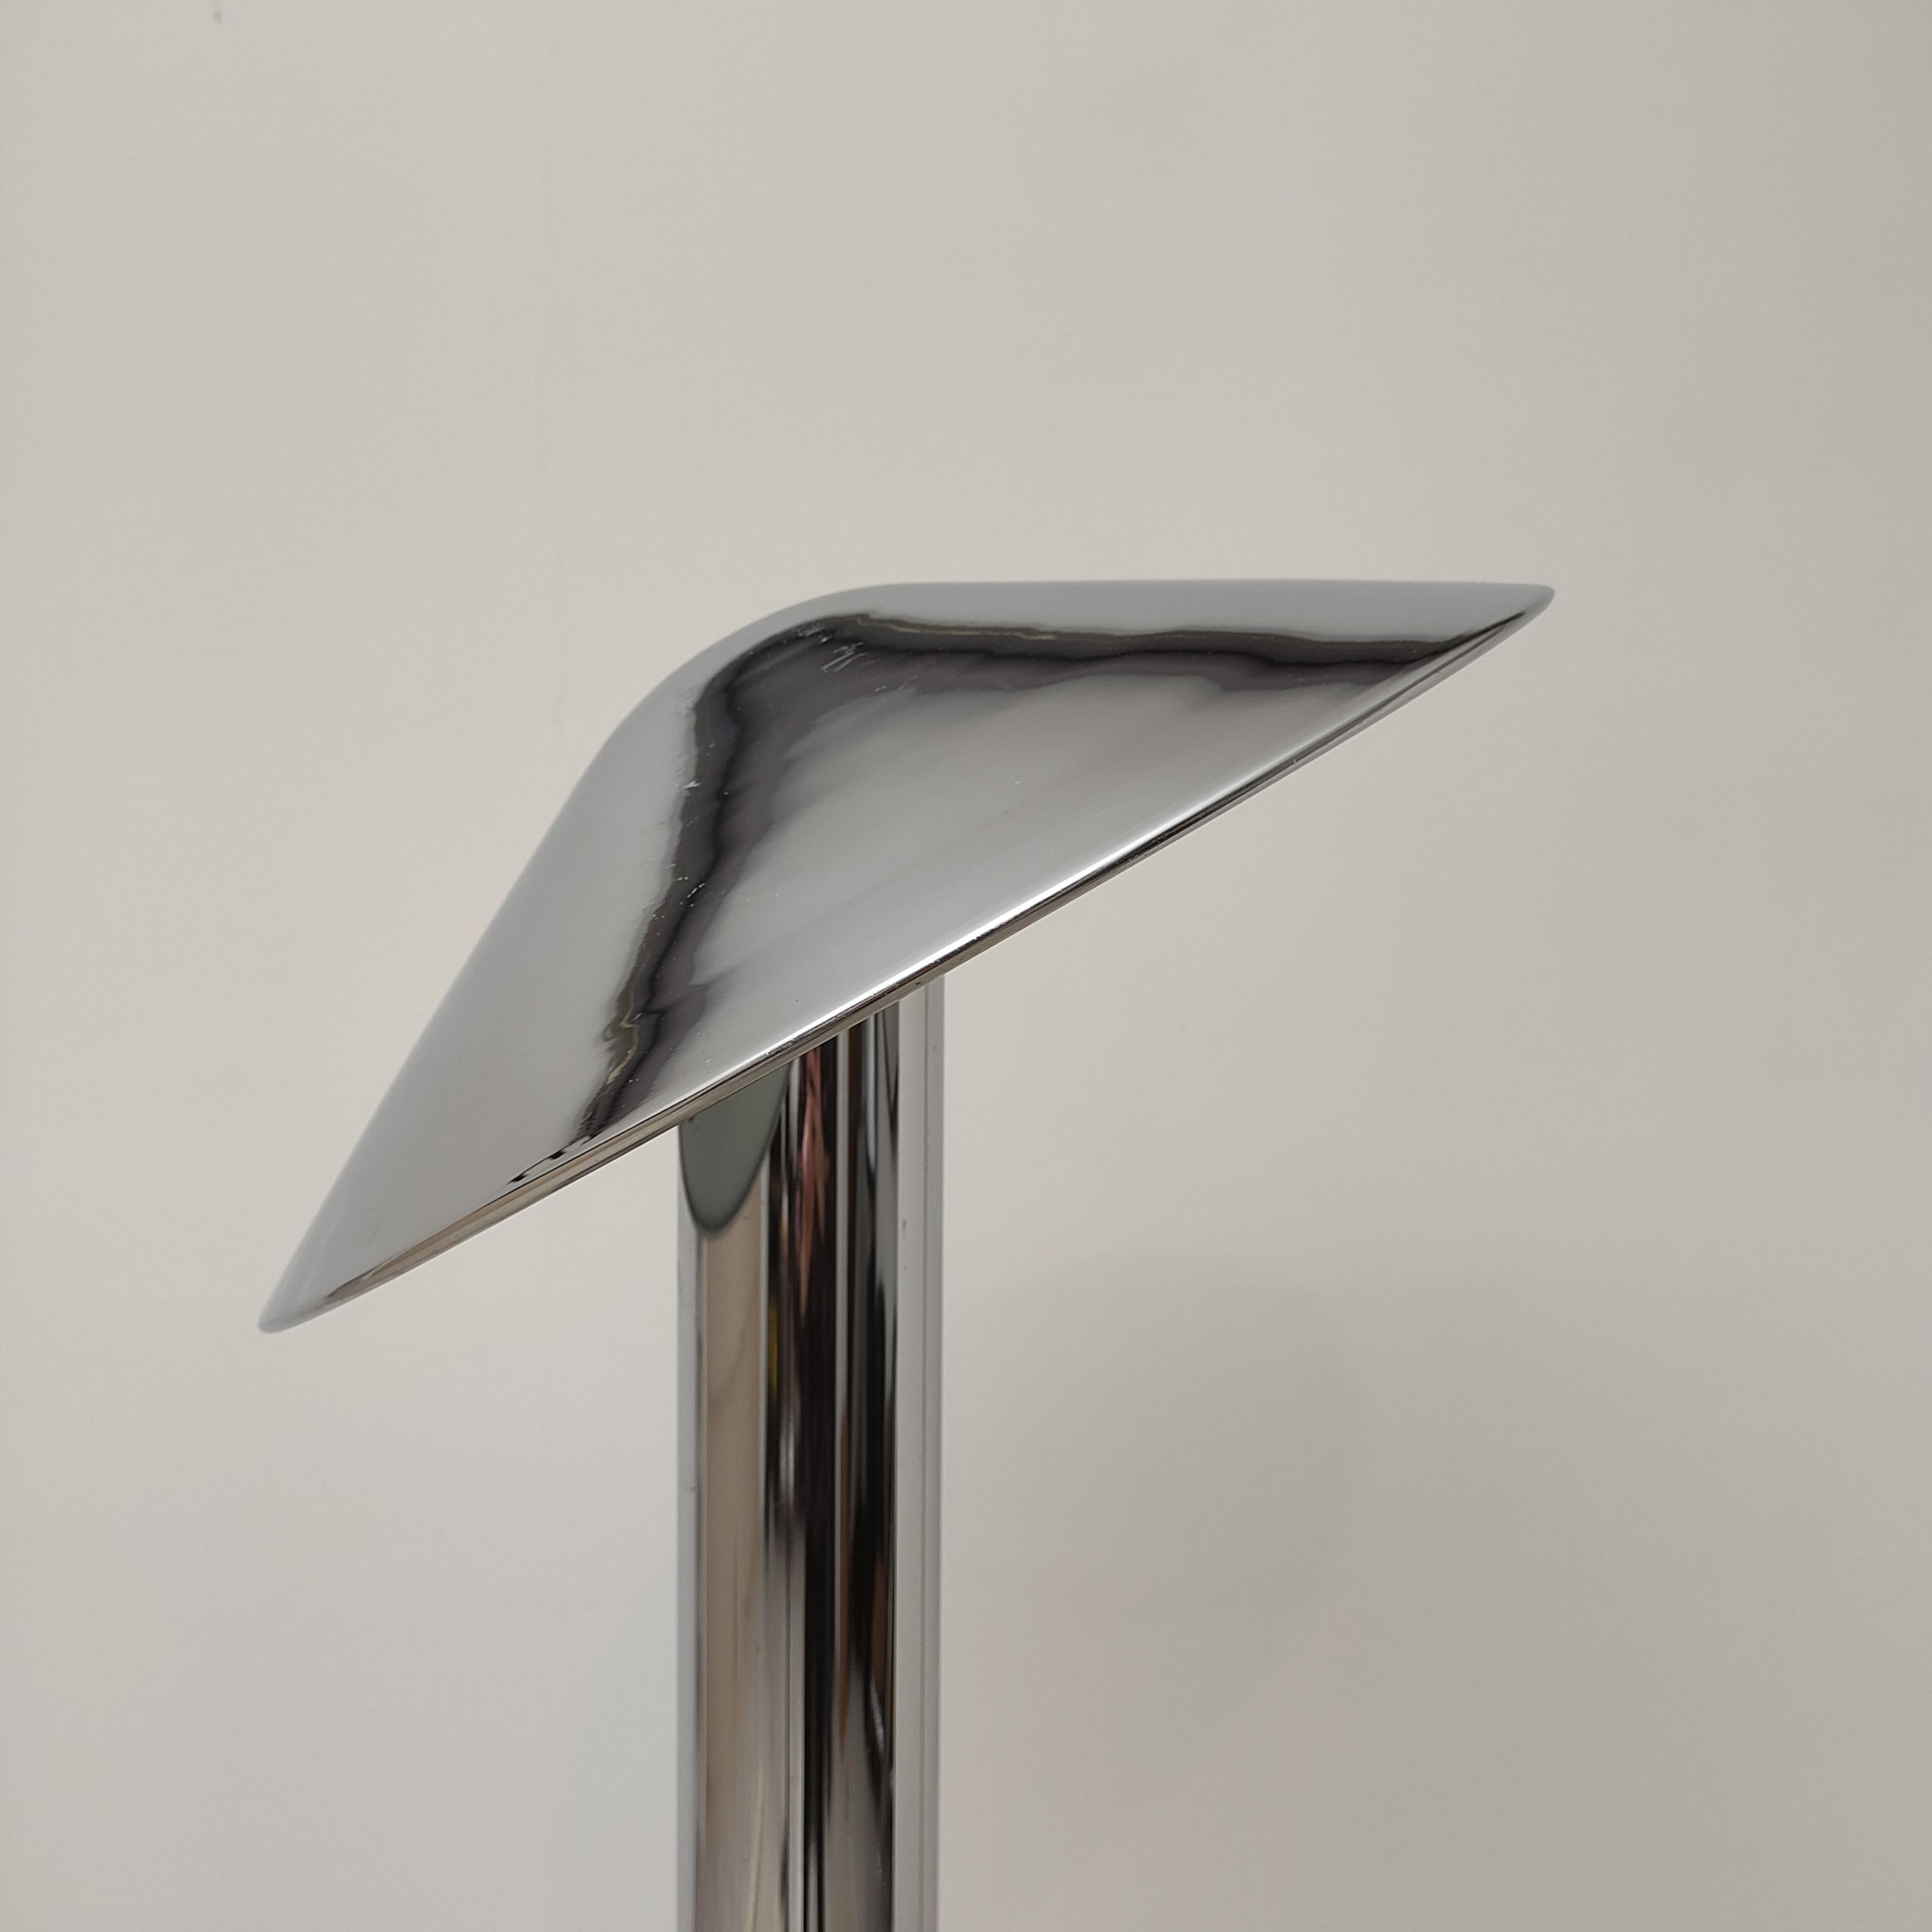 Seltene und prächtige Space-Age-Lampe der Firma Reggiani aus den 1960er Jahren.

Die Produktionen von Goffredo Reggiani zeigen einen Stil, der sich durch die intensive Verwendung von Spiegelchrom auszeichnet, aber auch durch spezielle Mechanismen